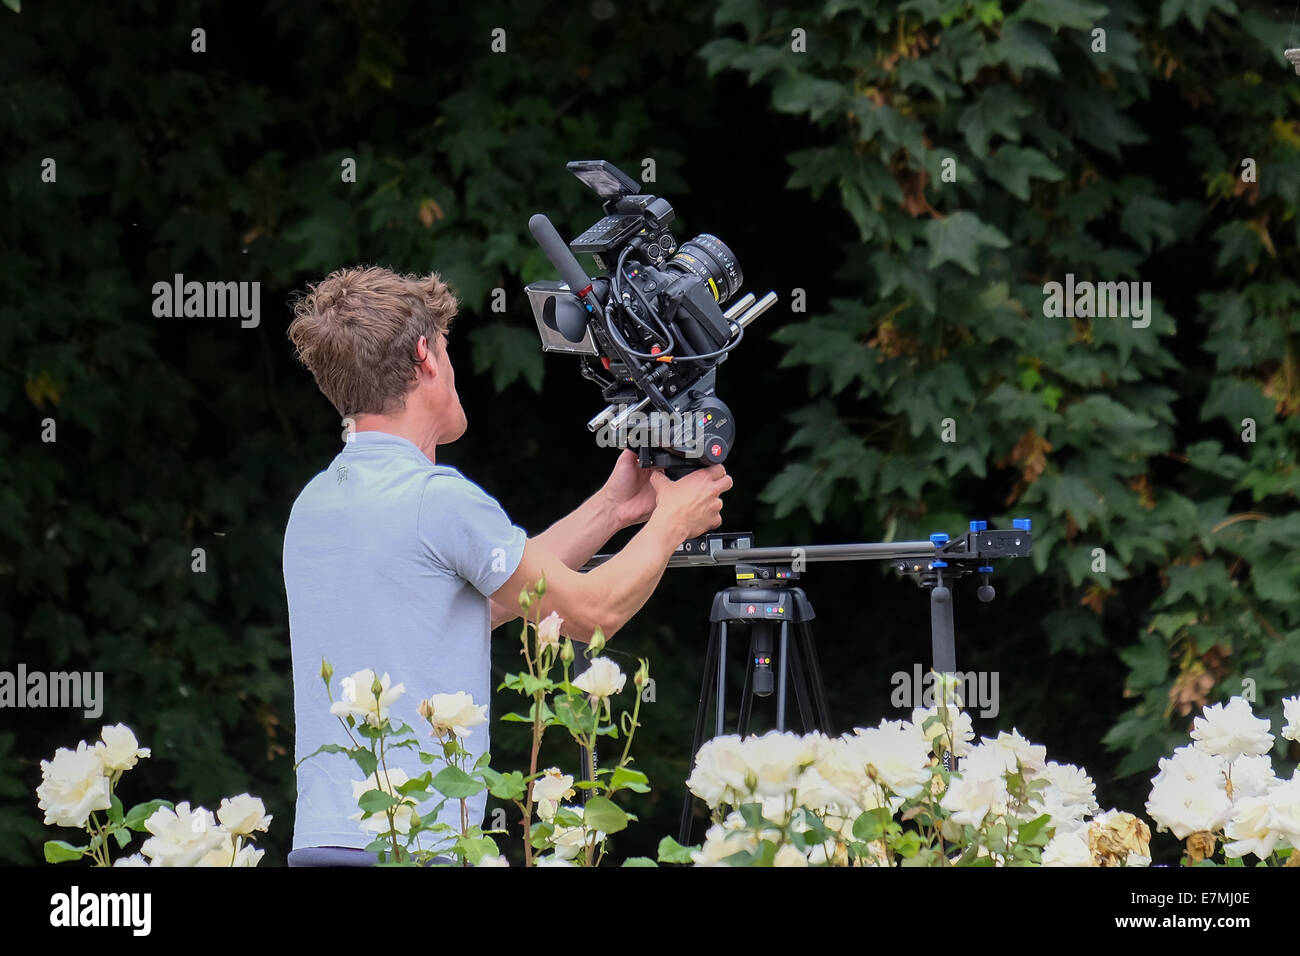 Cameraman riprese in area giardino con attrezzature video professionali Foto Stock